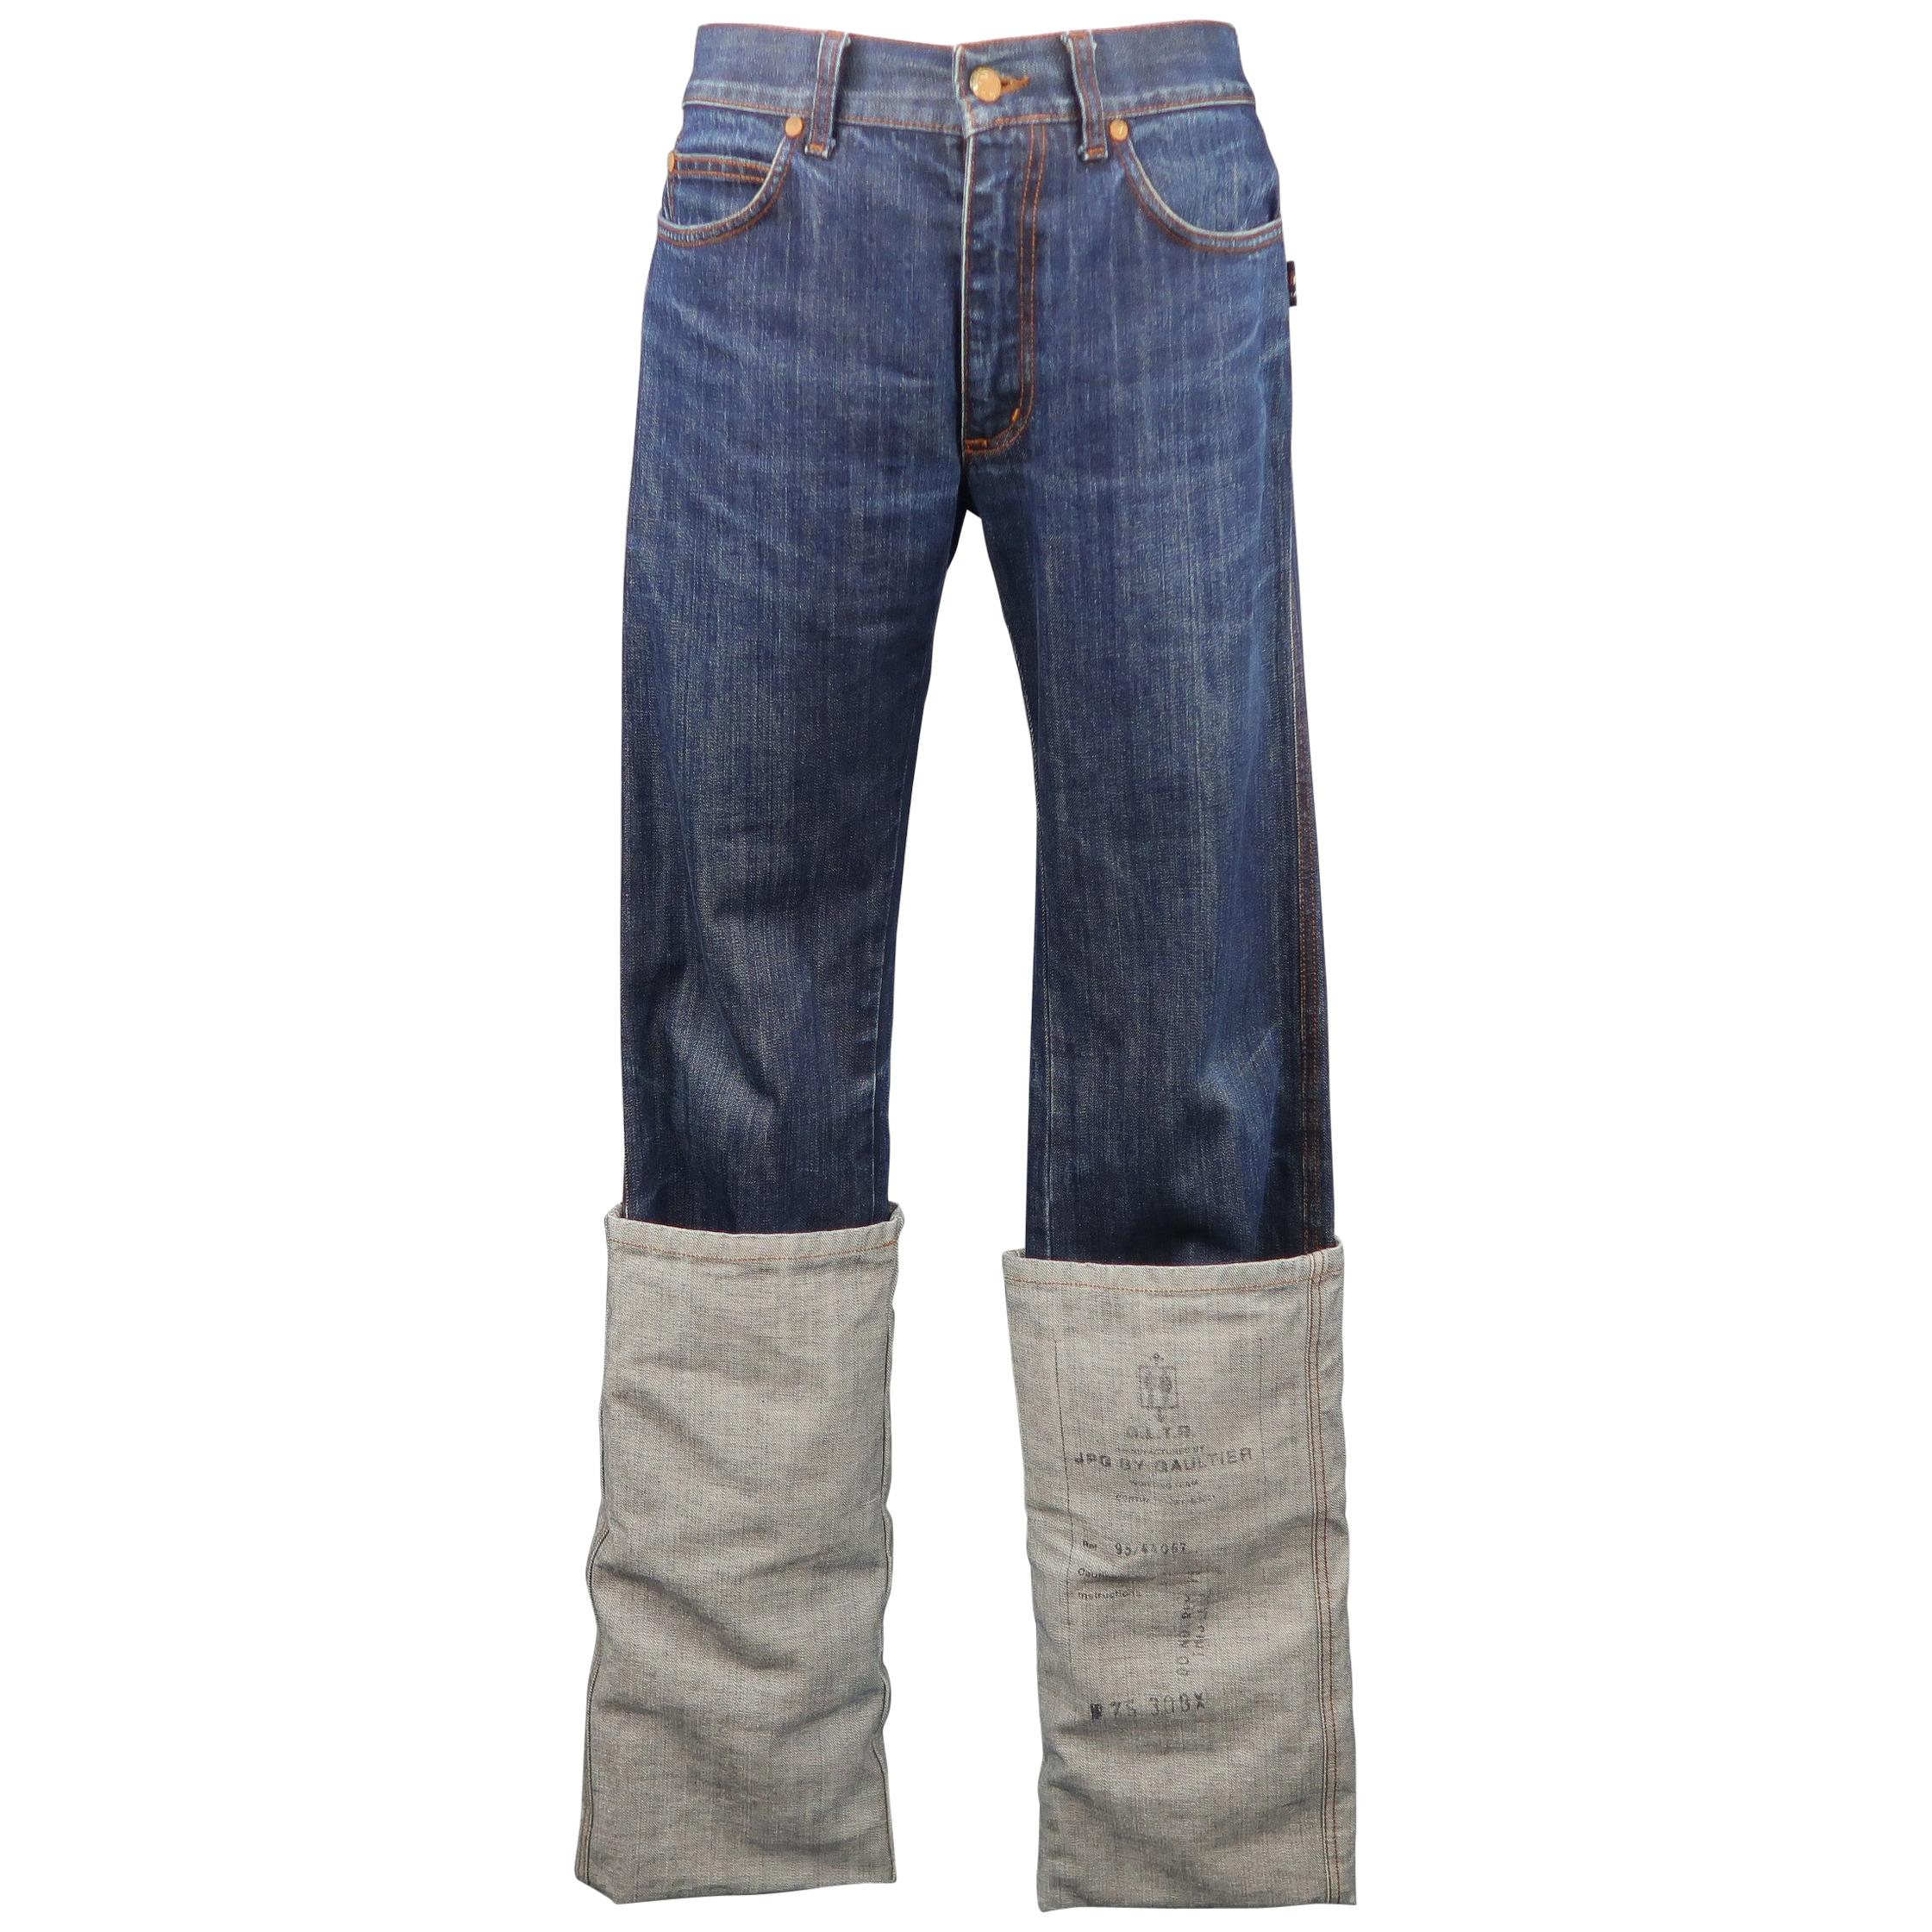 JEAN PAUL GAULTIER JPG JEANS Size 31 Dark Wash Oversized Cuff Jeans